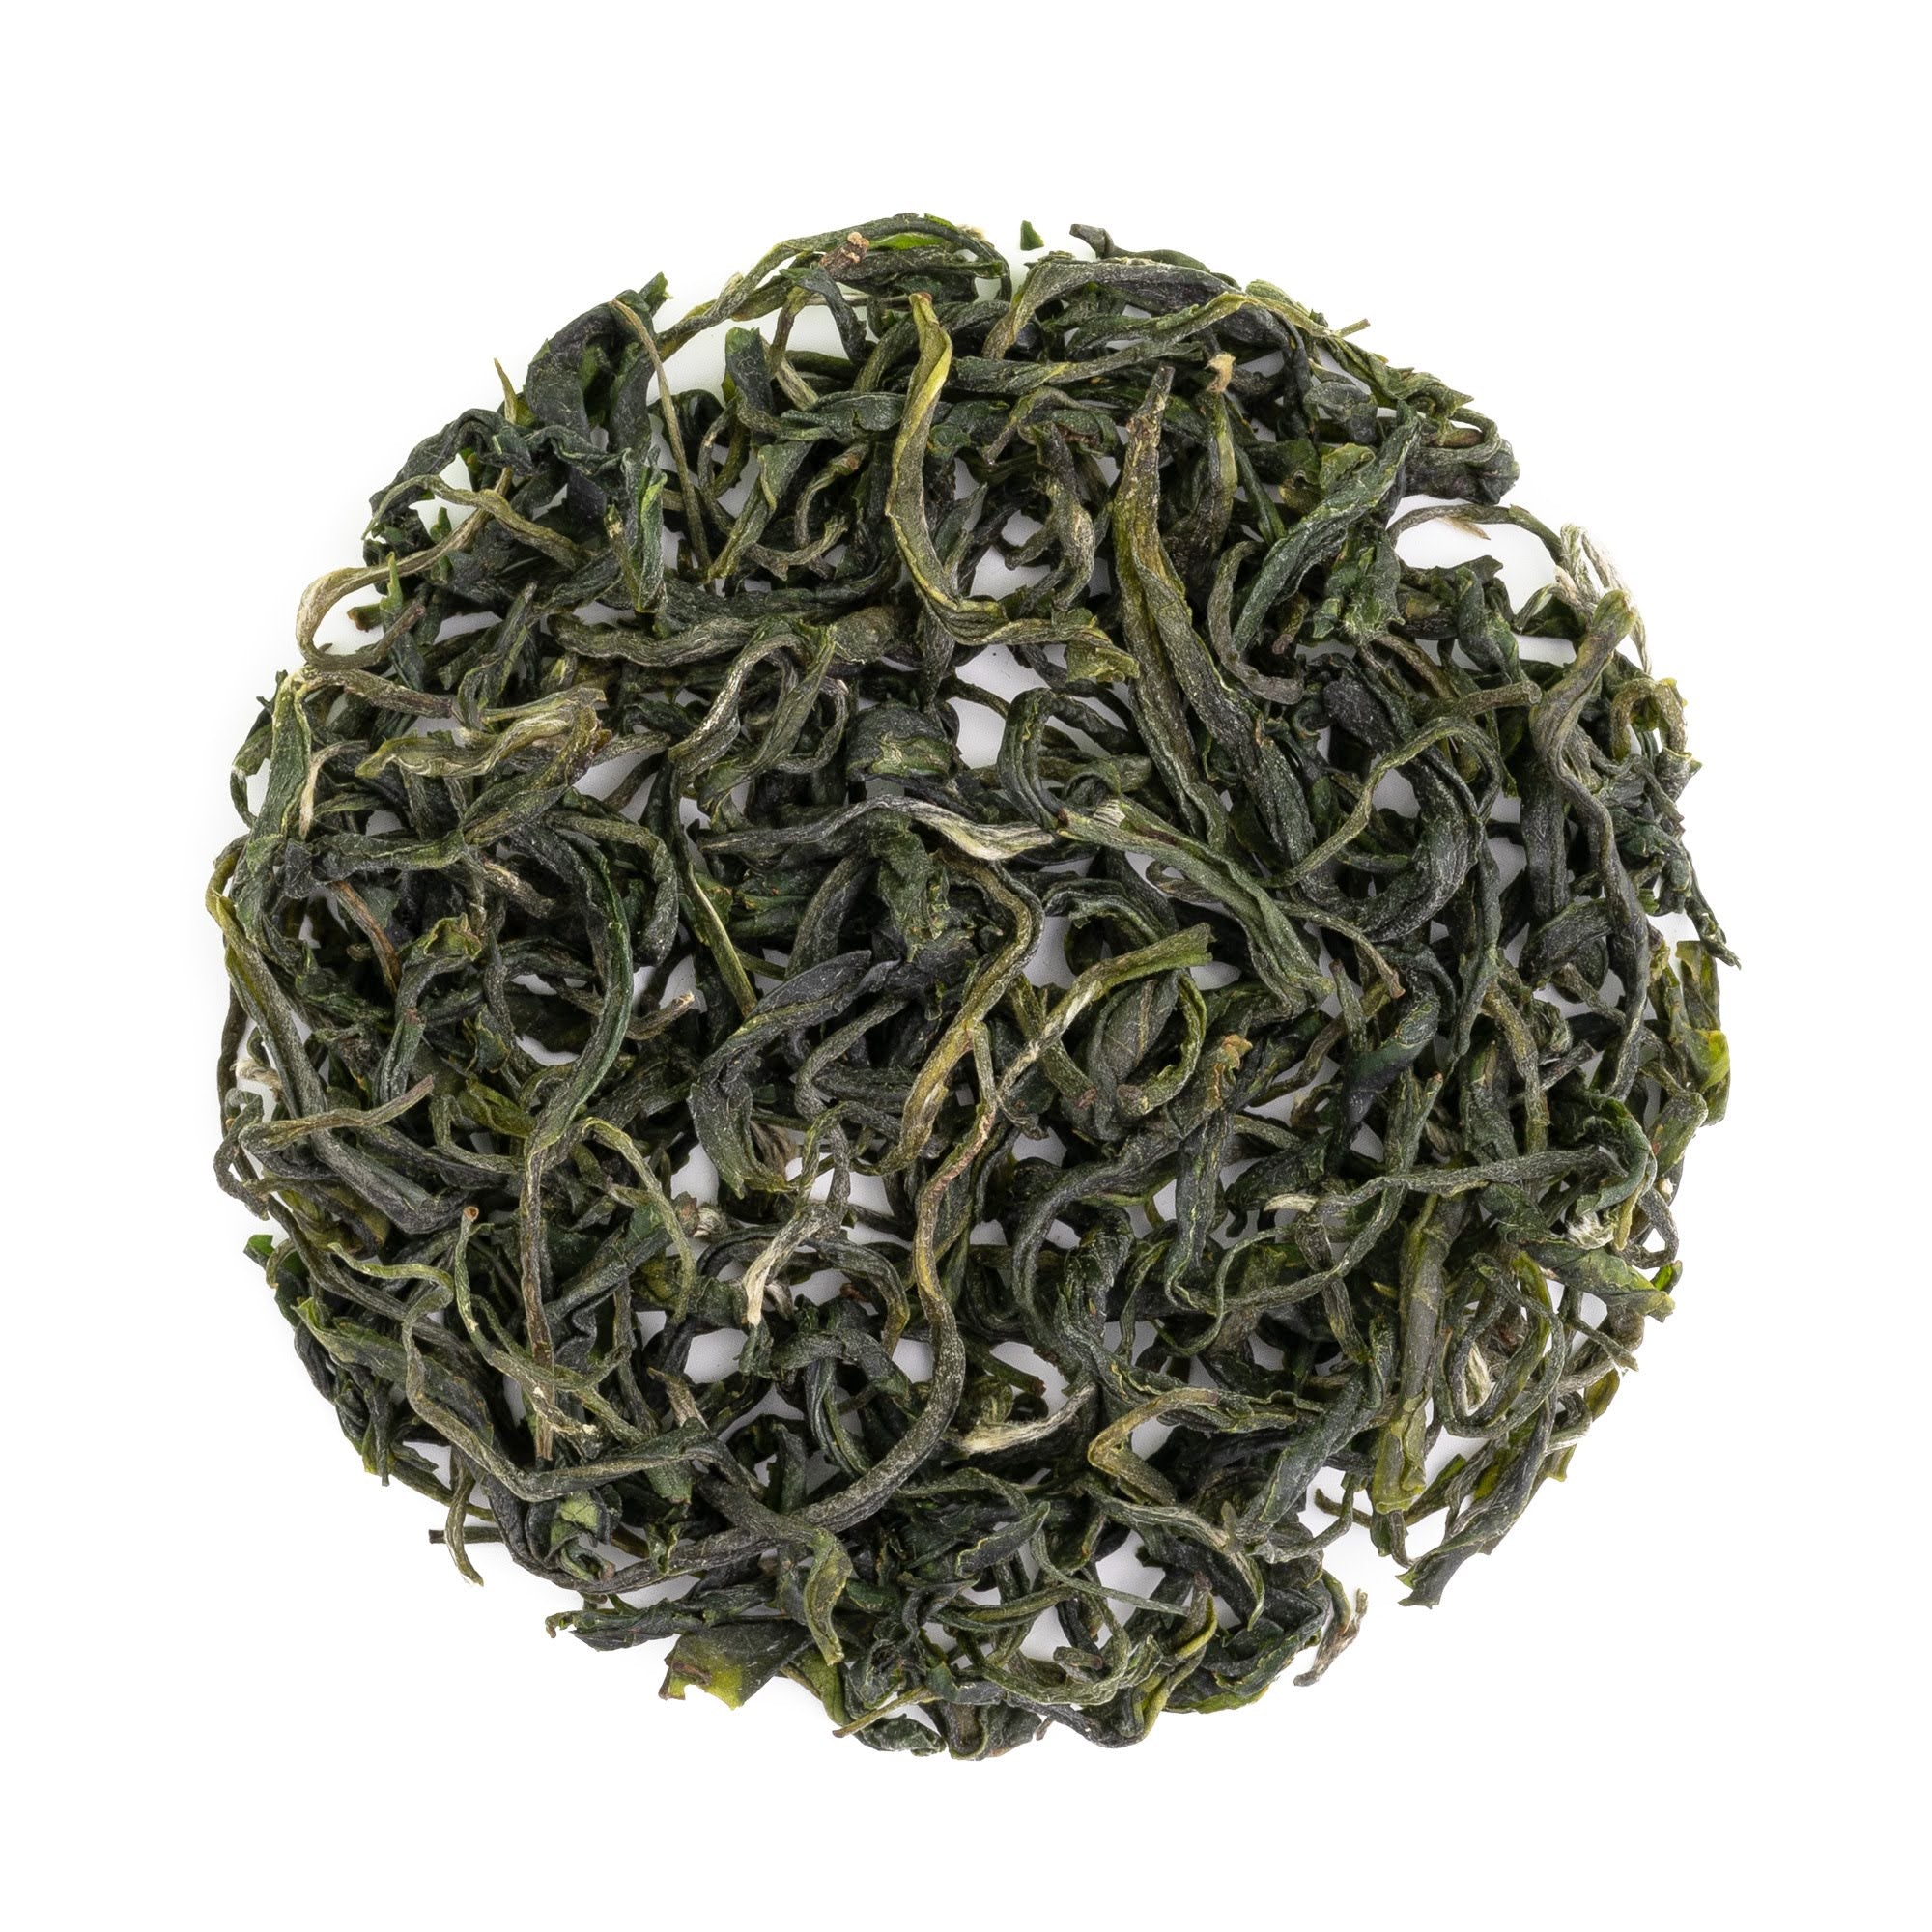 Organic Pure Green Tea - Artisan Loose Leaf Green Tea - Organic Mao Jian - Bulk Loose Leaf Green Tea | Heavenly Tea Leaves